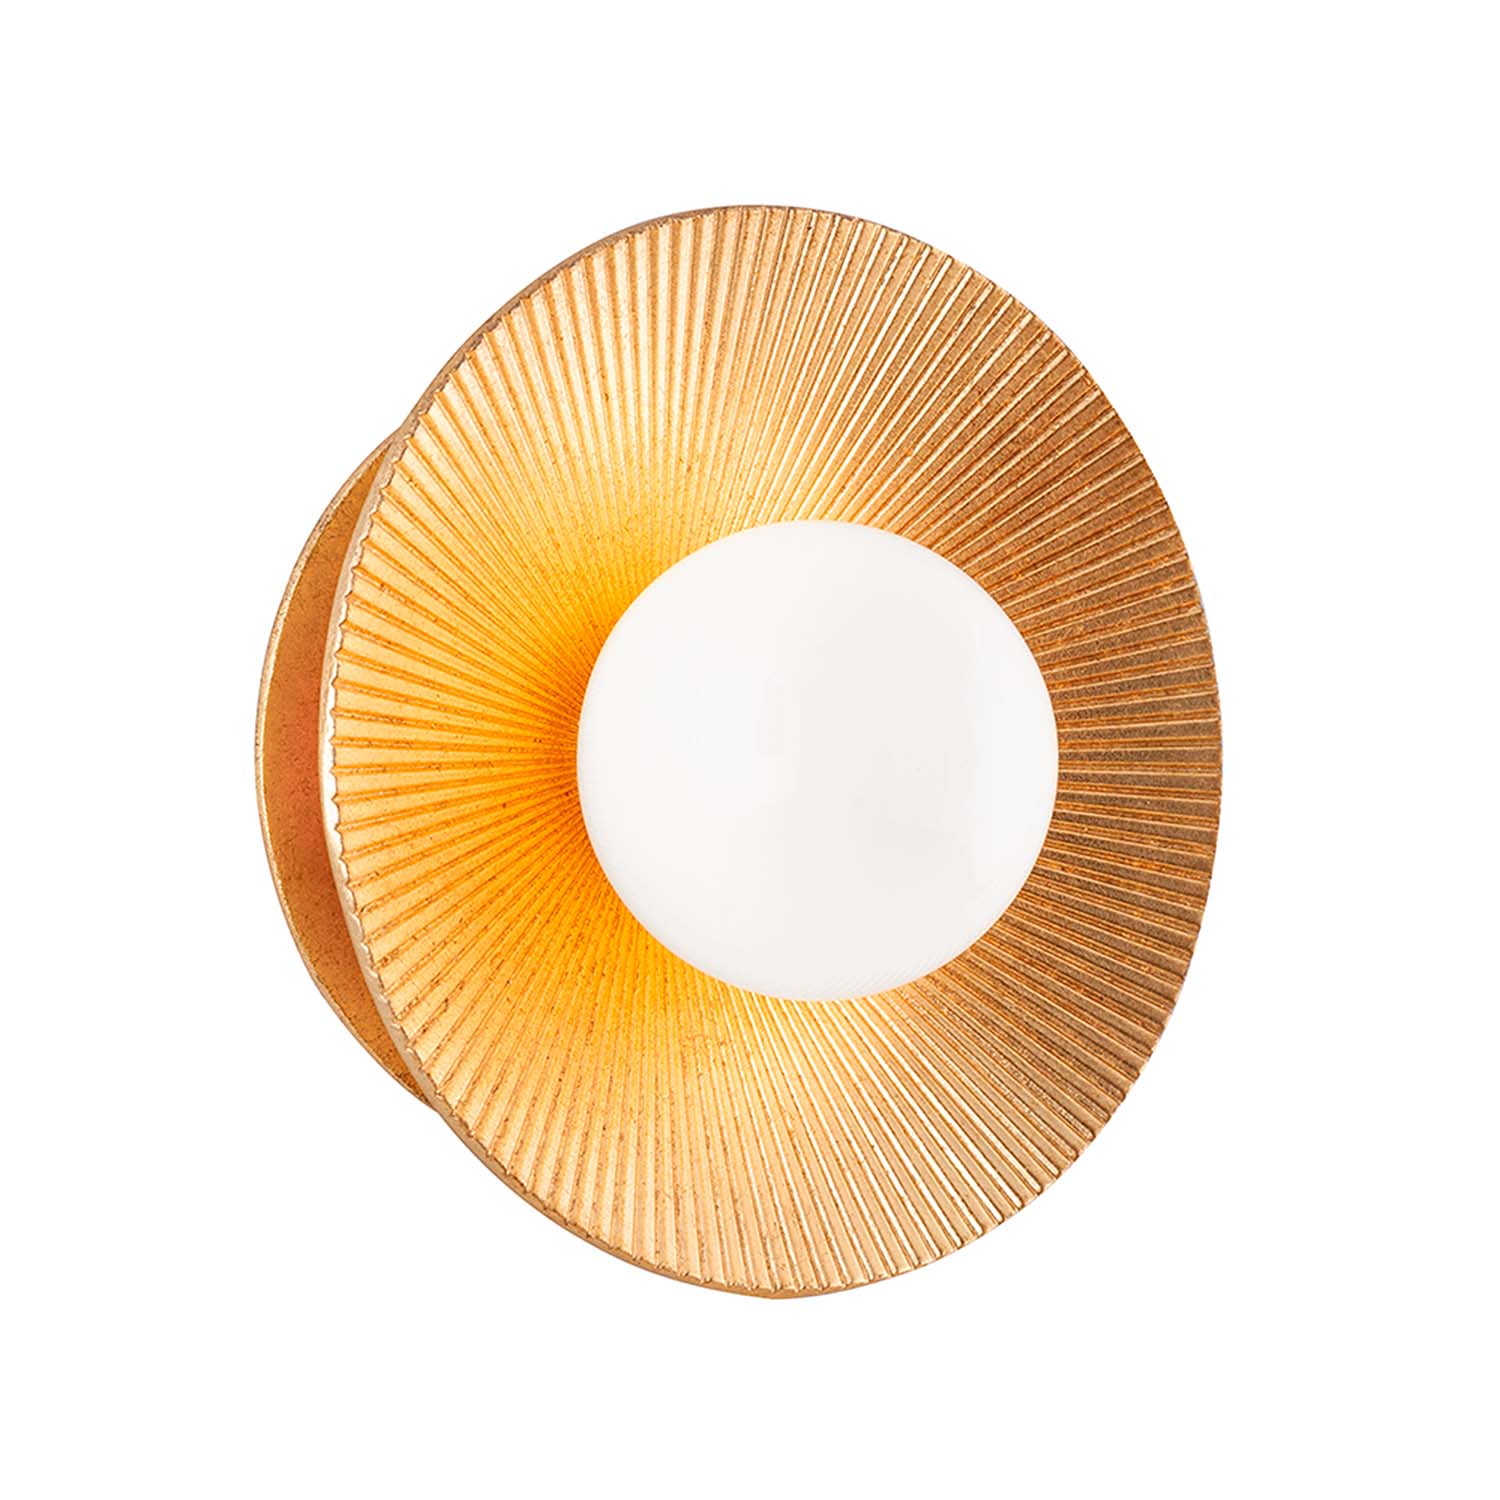 EMERALD - Chic and designer golden brass wall light